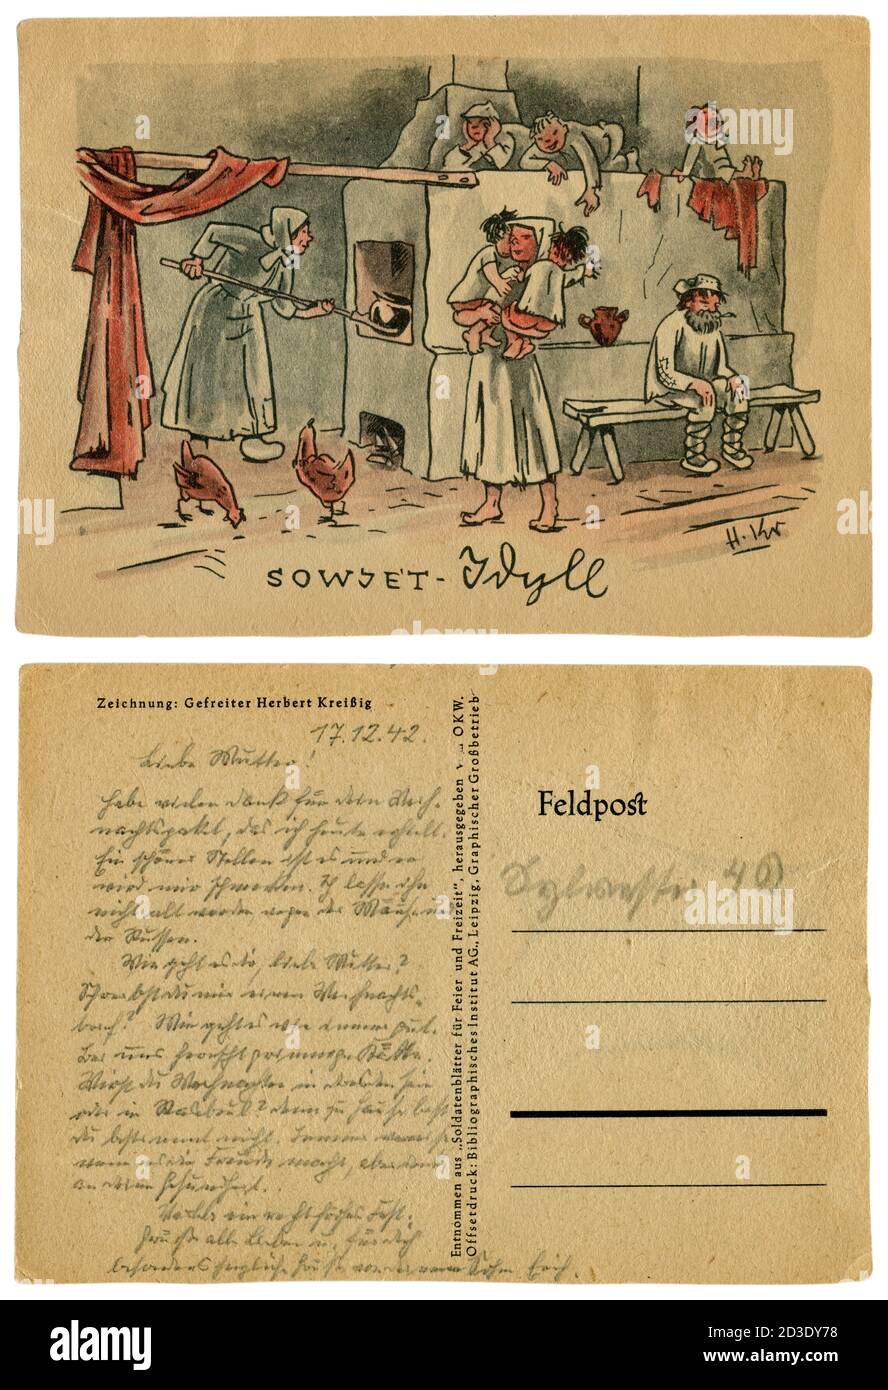 Cartolina storica tedesca: 'Soviet idyll'. Una caricatura di una grande famiglia con bambini all'interno di una capanna, vicino ad una stufa russa, l'Unione Sovietica, 1941 Foto Stock